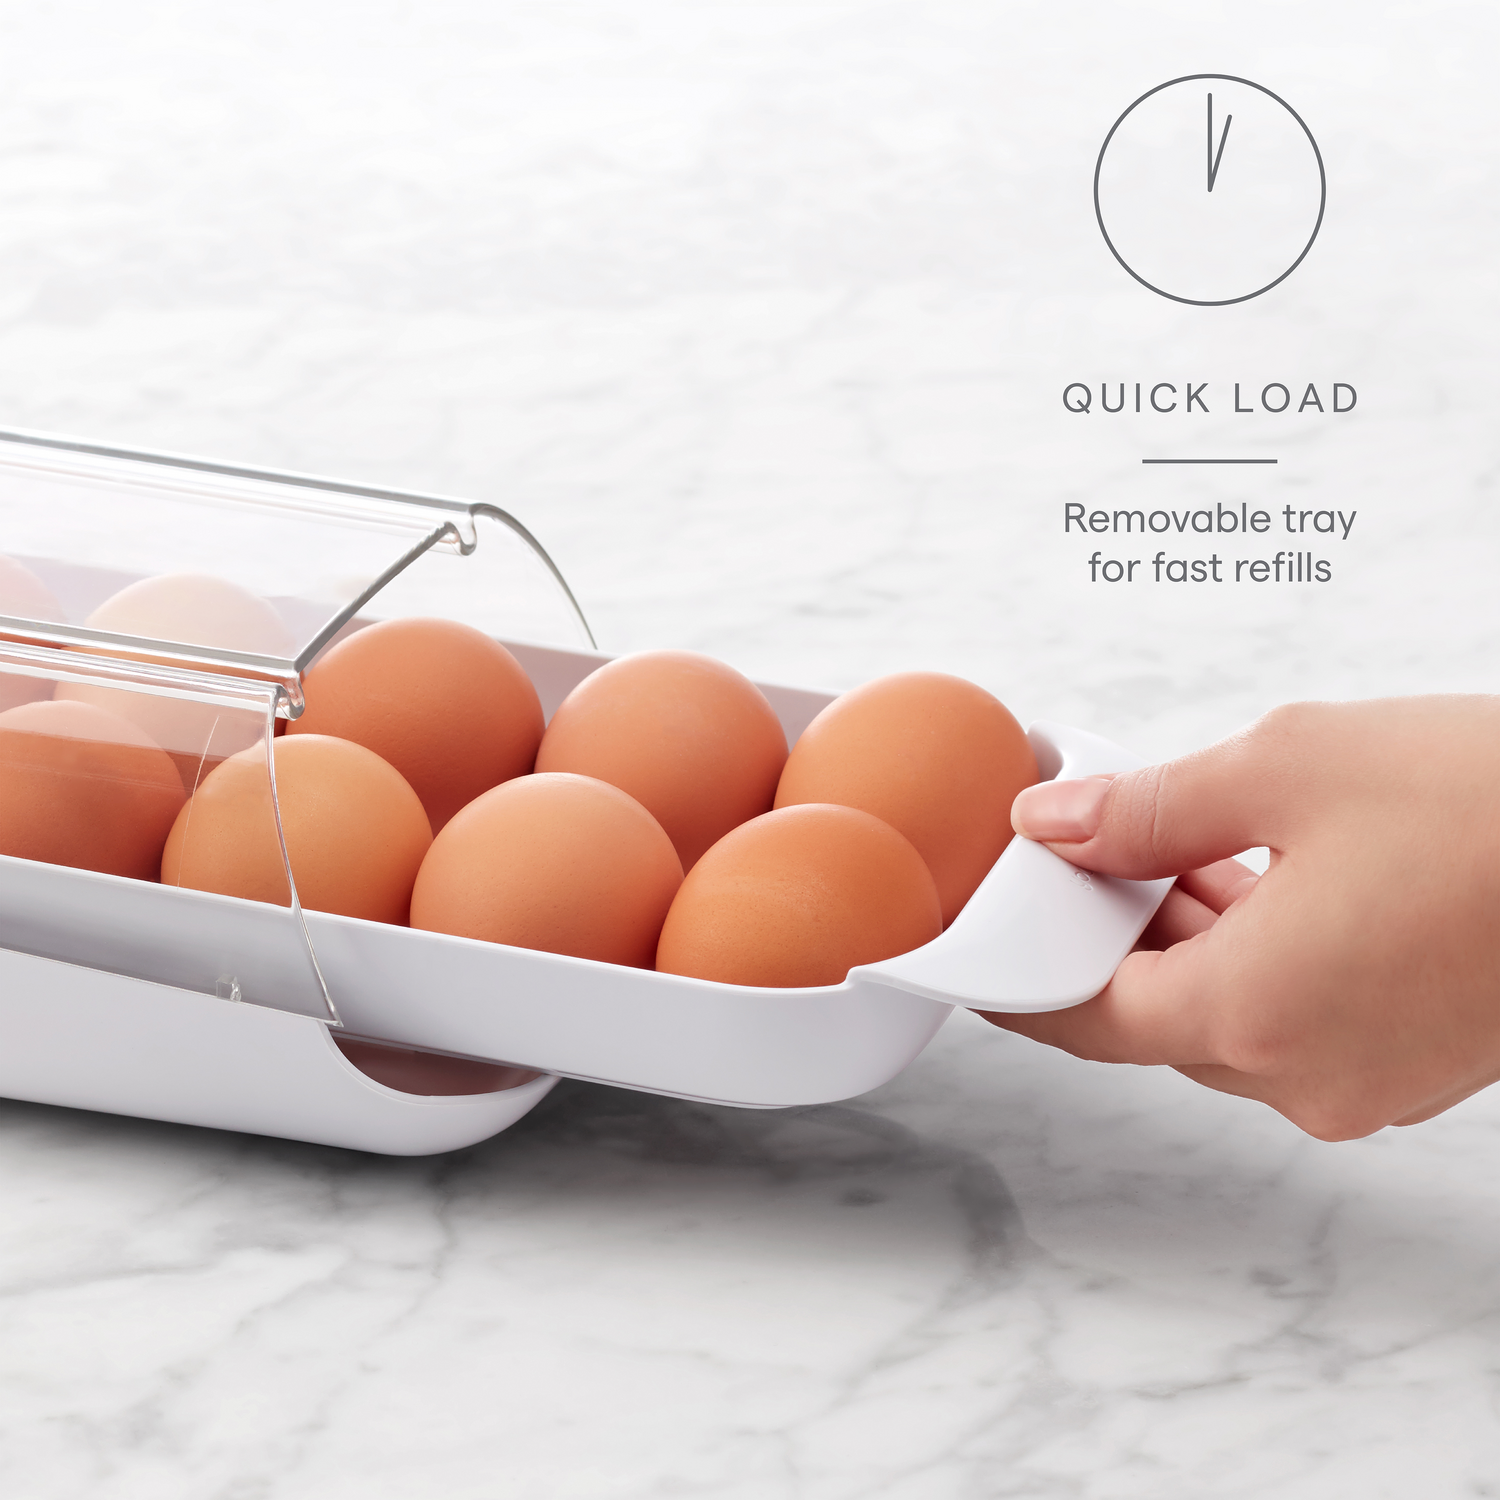  YouCopia Dispensador de huevos RollDown™, dispensador de huevos  rodantes y organizador para almacenamiento en refrigerador : Hogar y Cocina